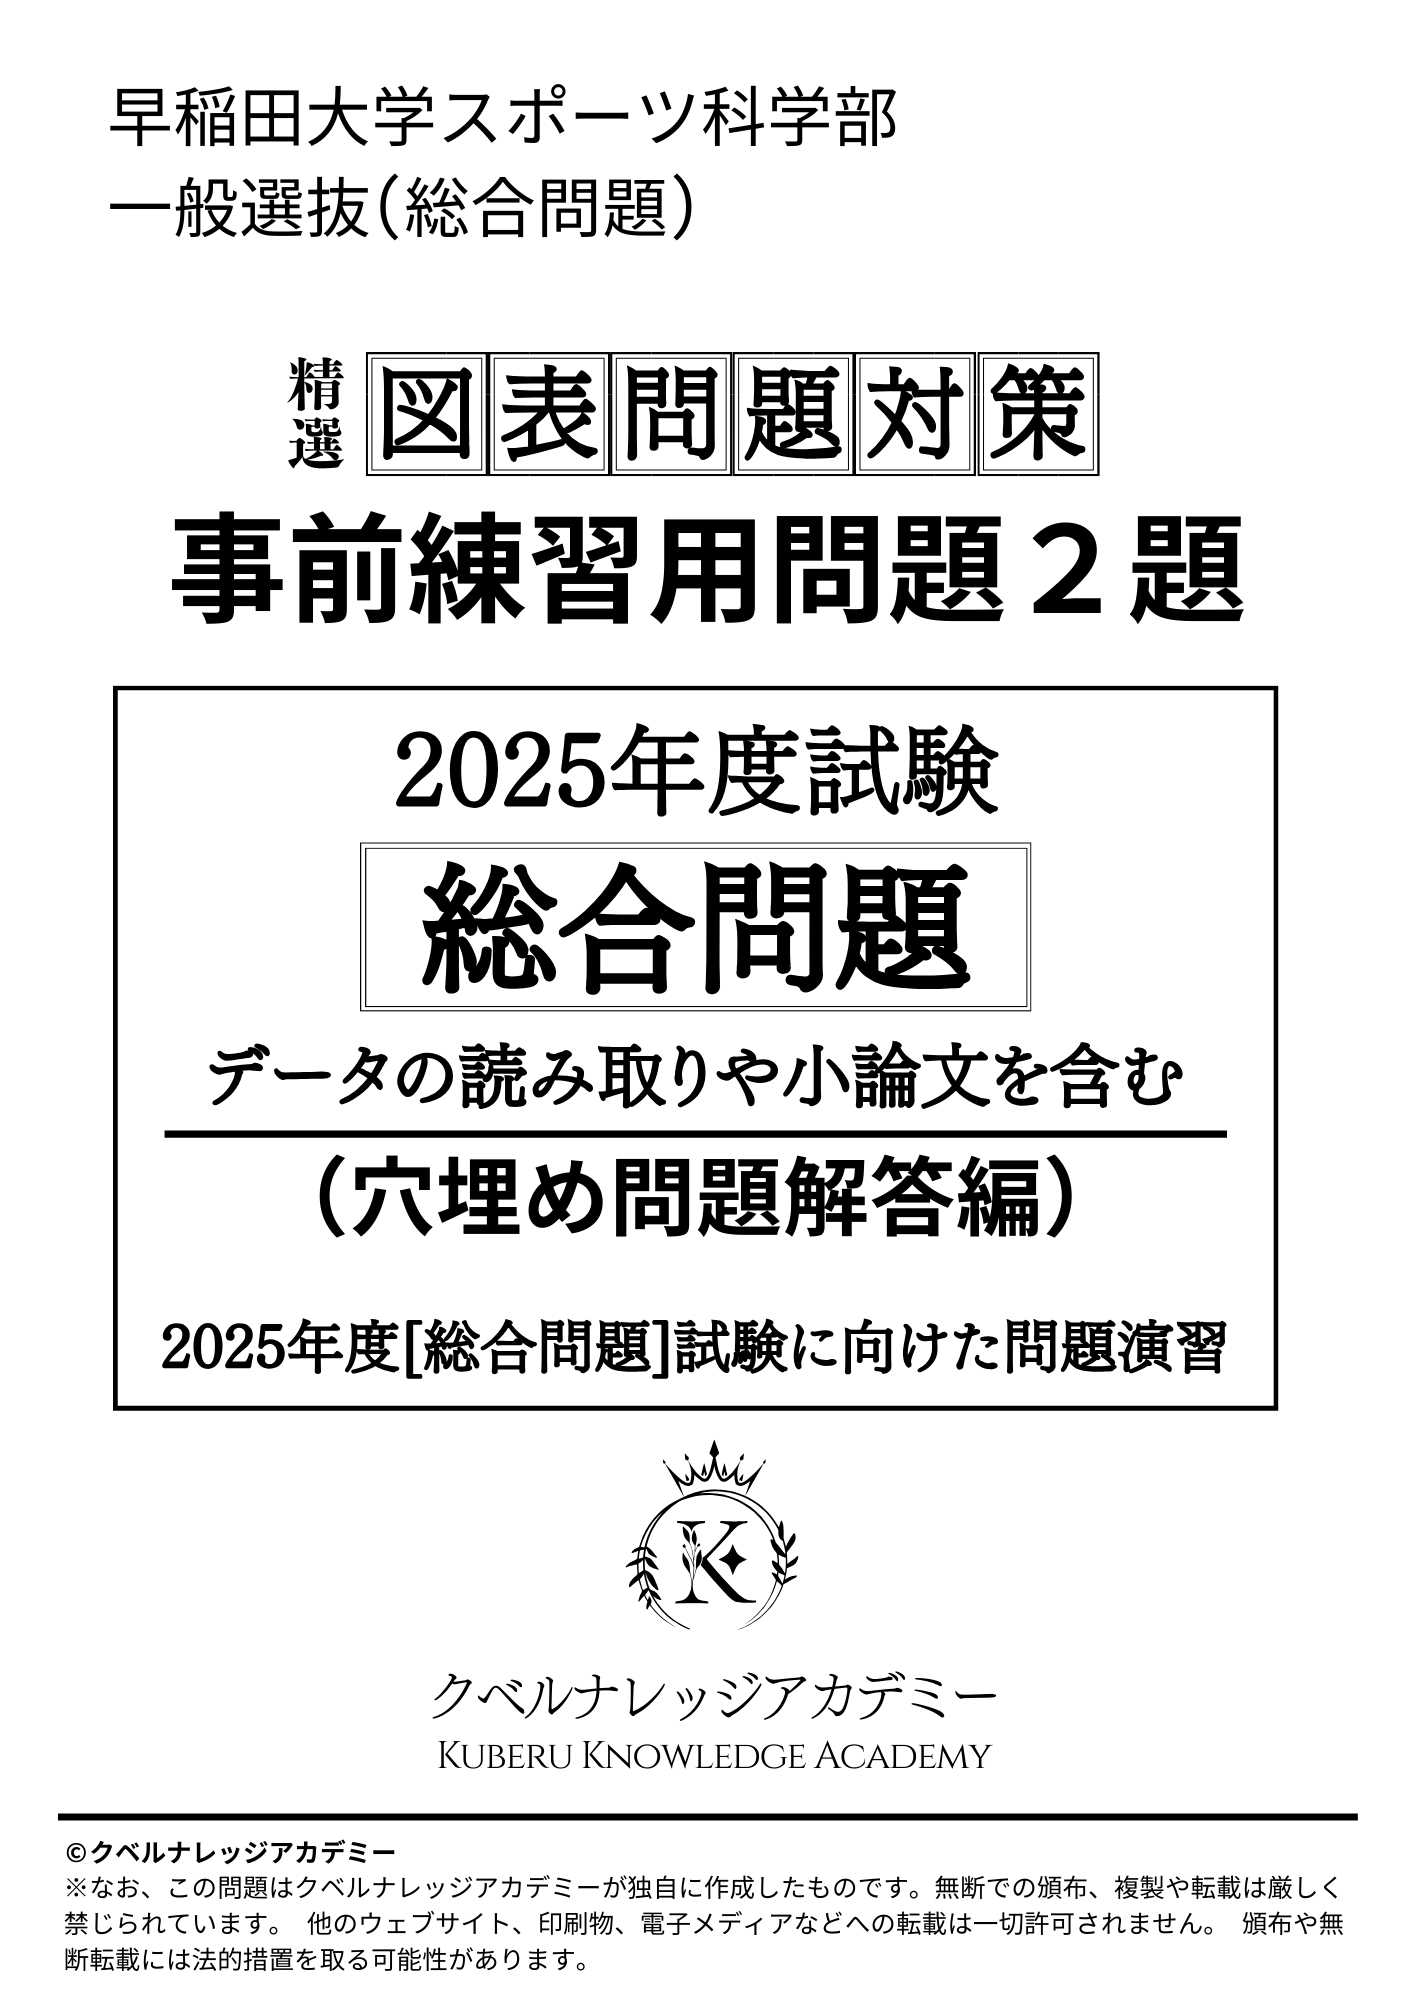 早稲田大学スポーツ科学部】2023/2024年度 小論文正答例(一般選抜 